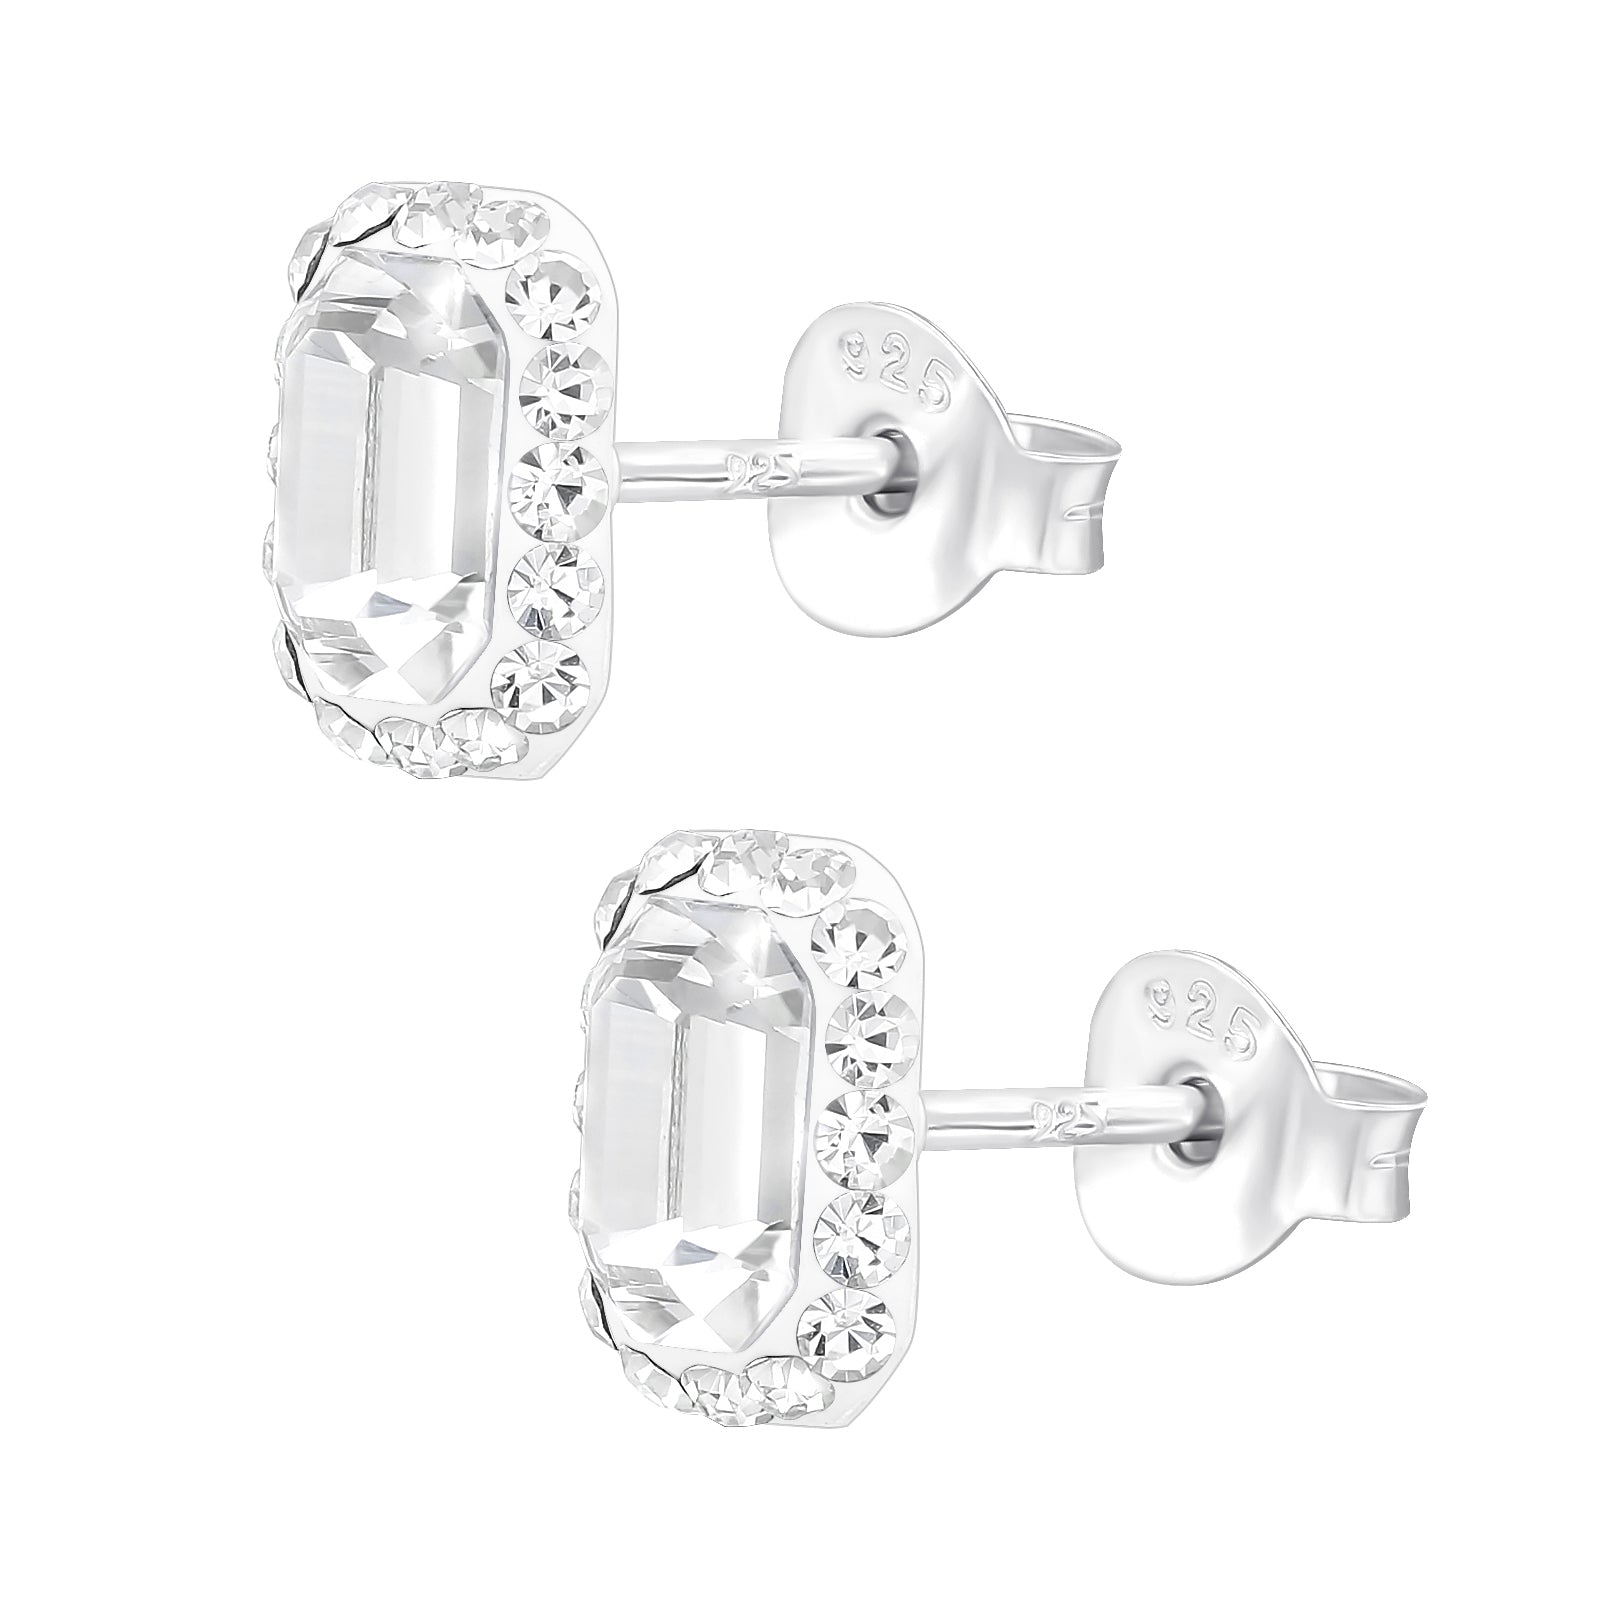 Lady D. silver earrings